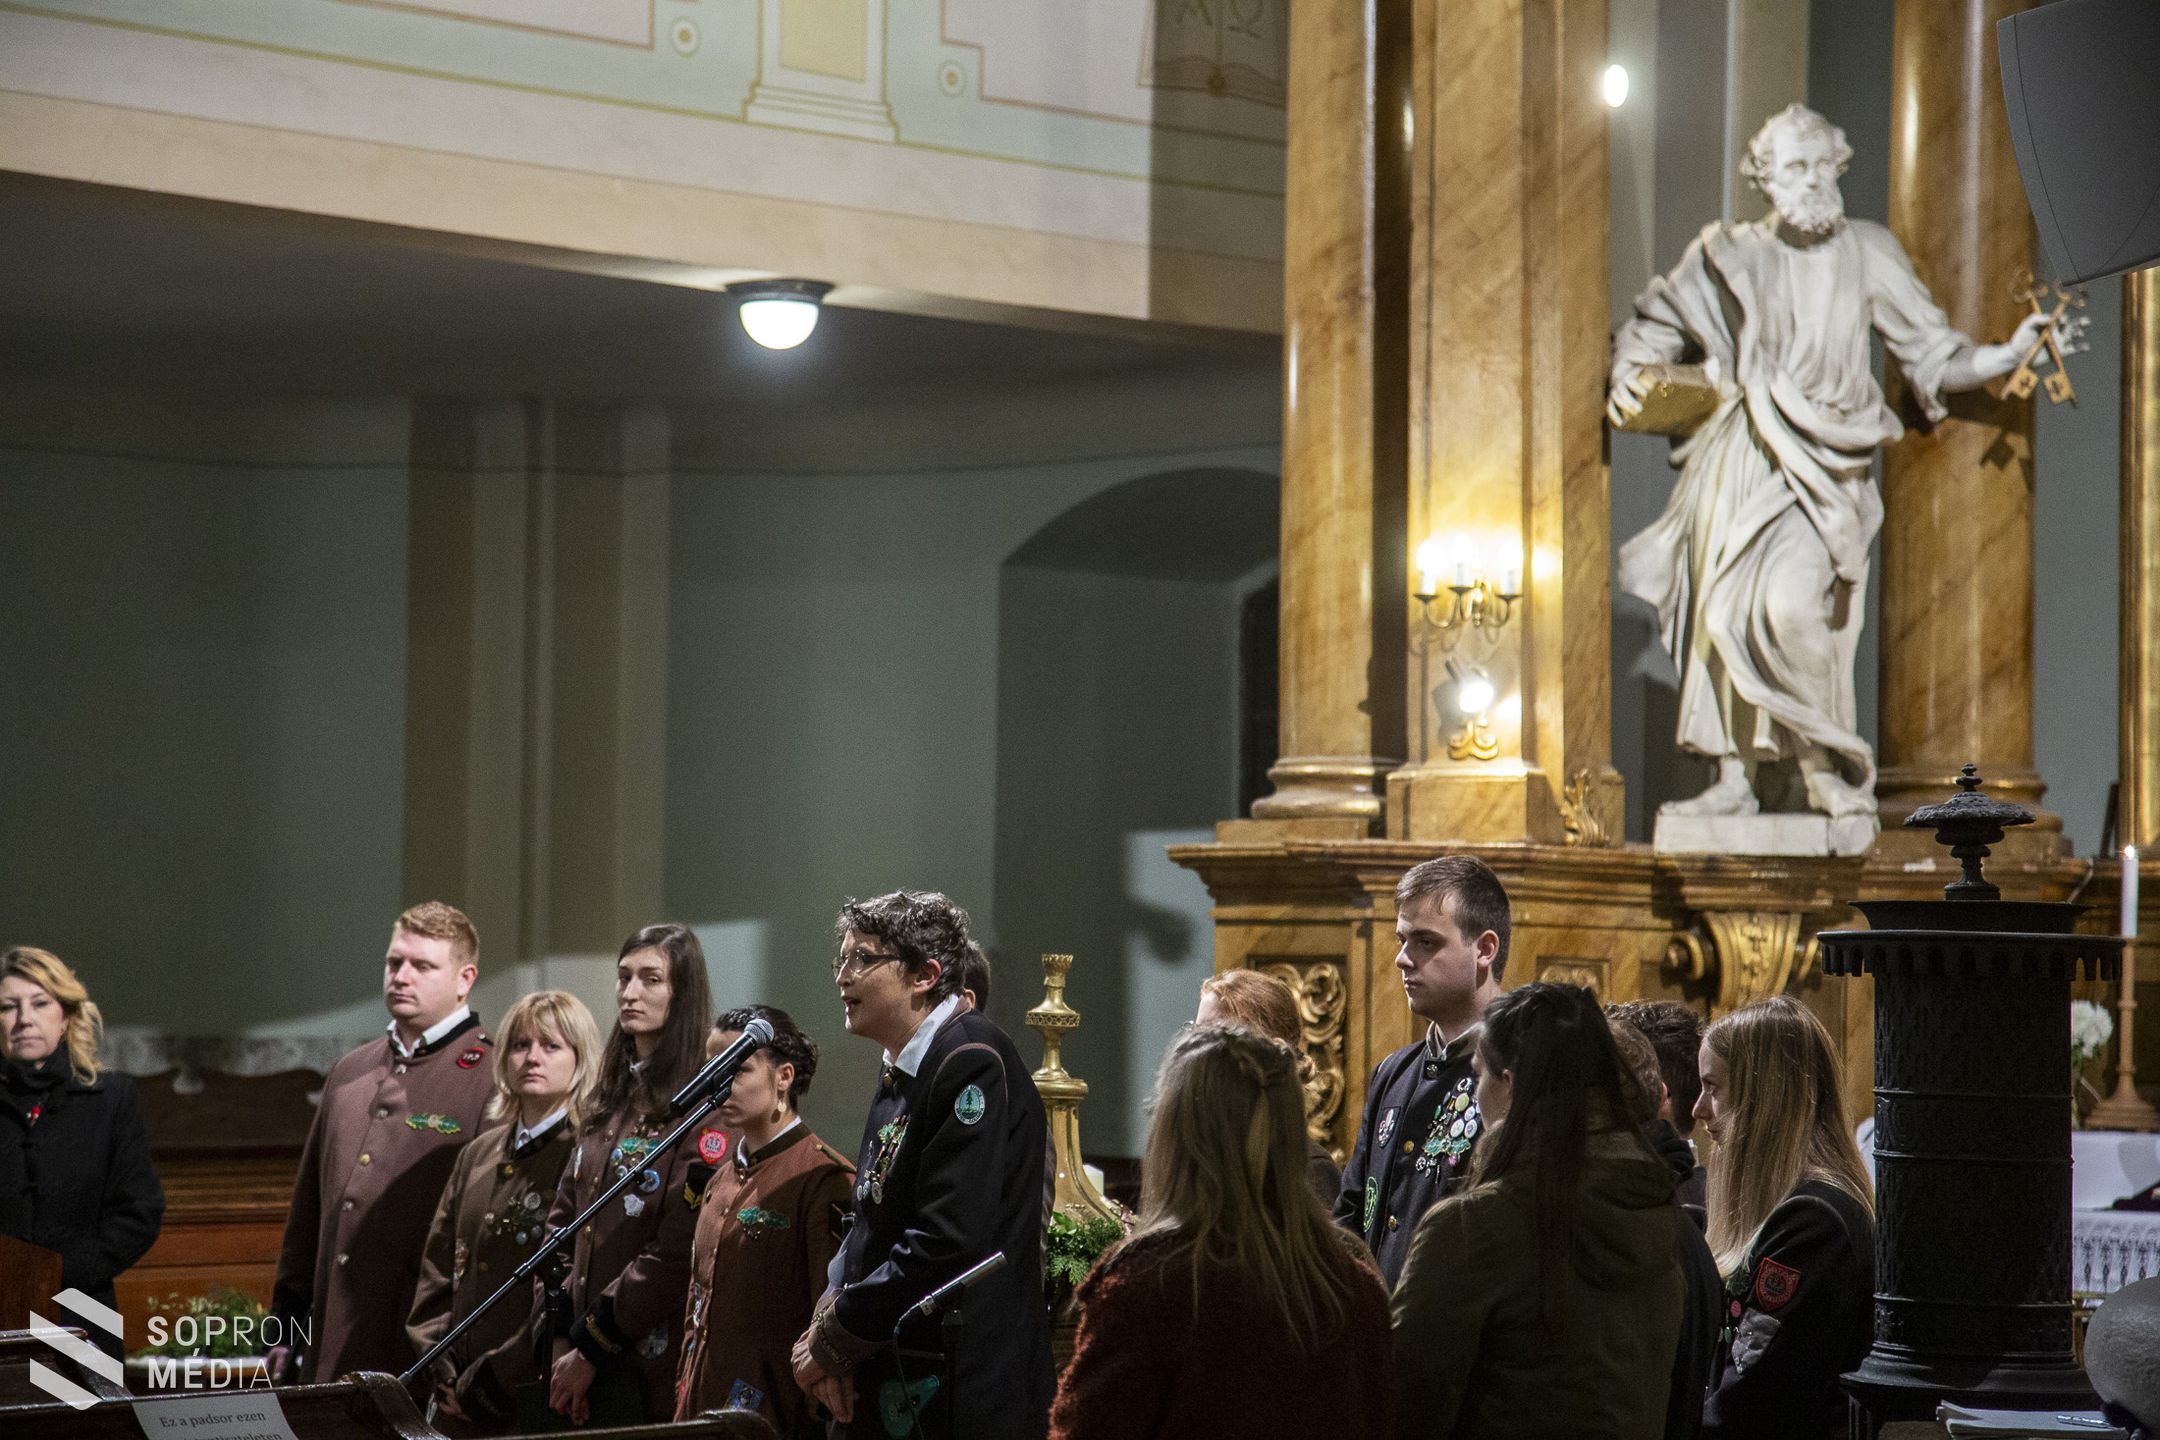 A Soproni Egyetem centenáriumi megemlékezése: A hűség kötelez